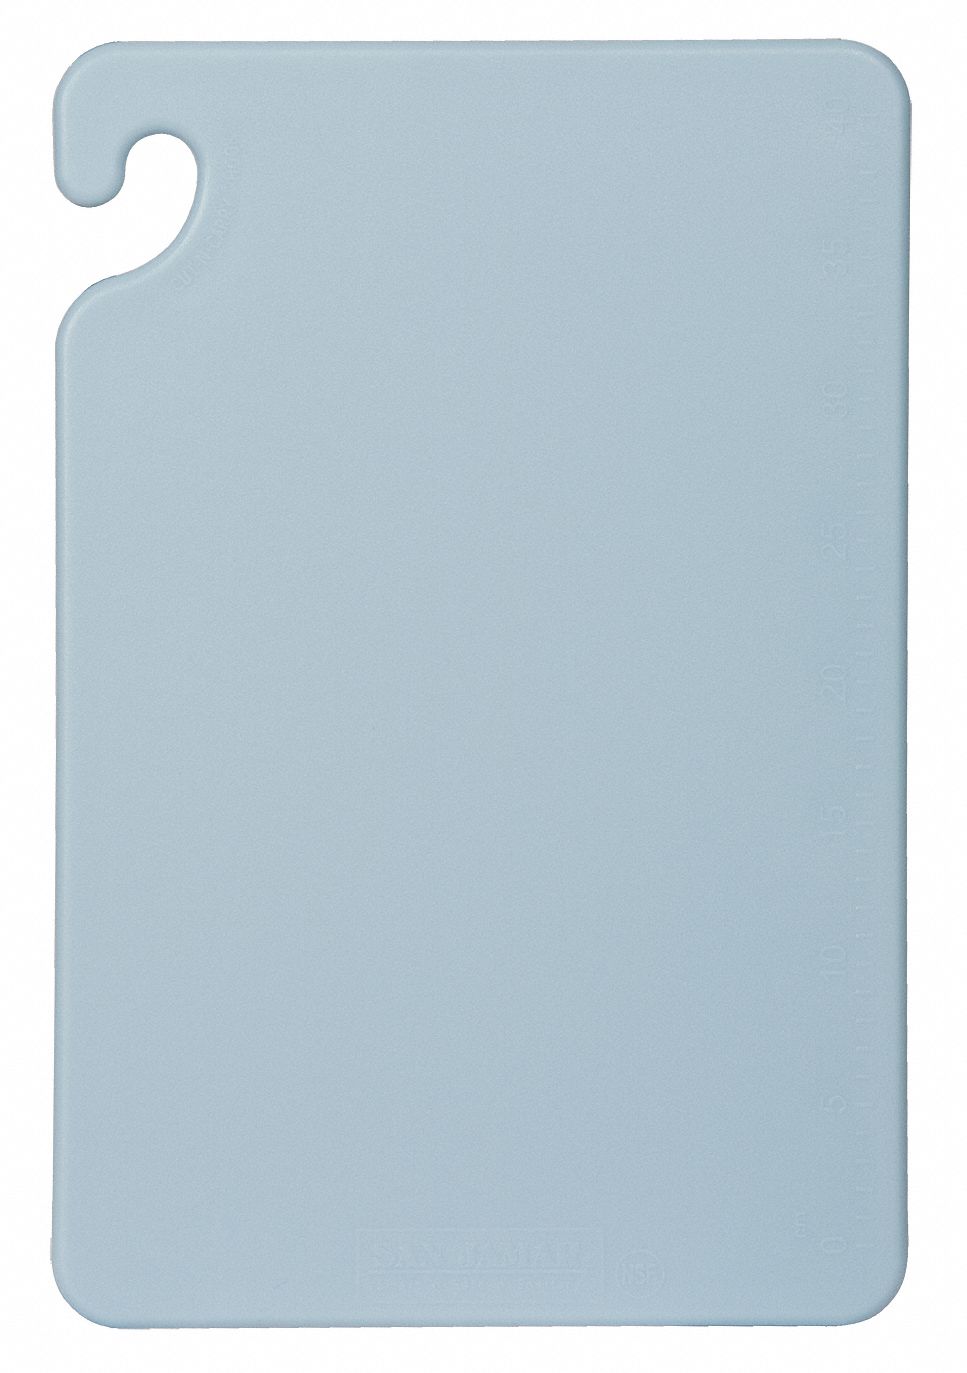 6ADP7 - Cutting Board 12x18 Blue